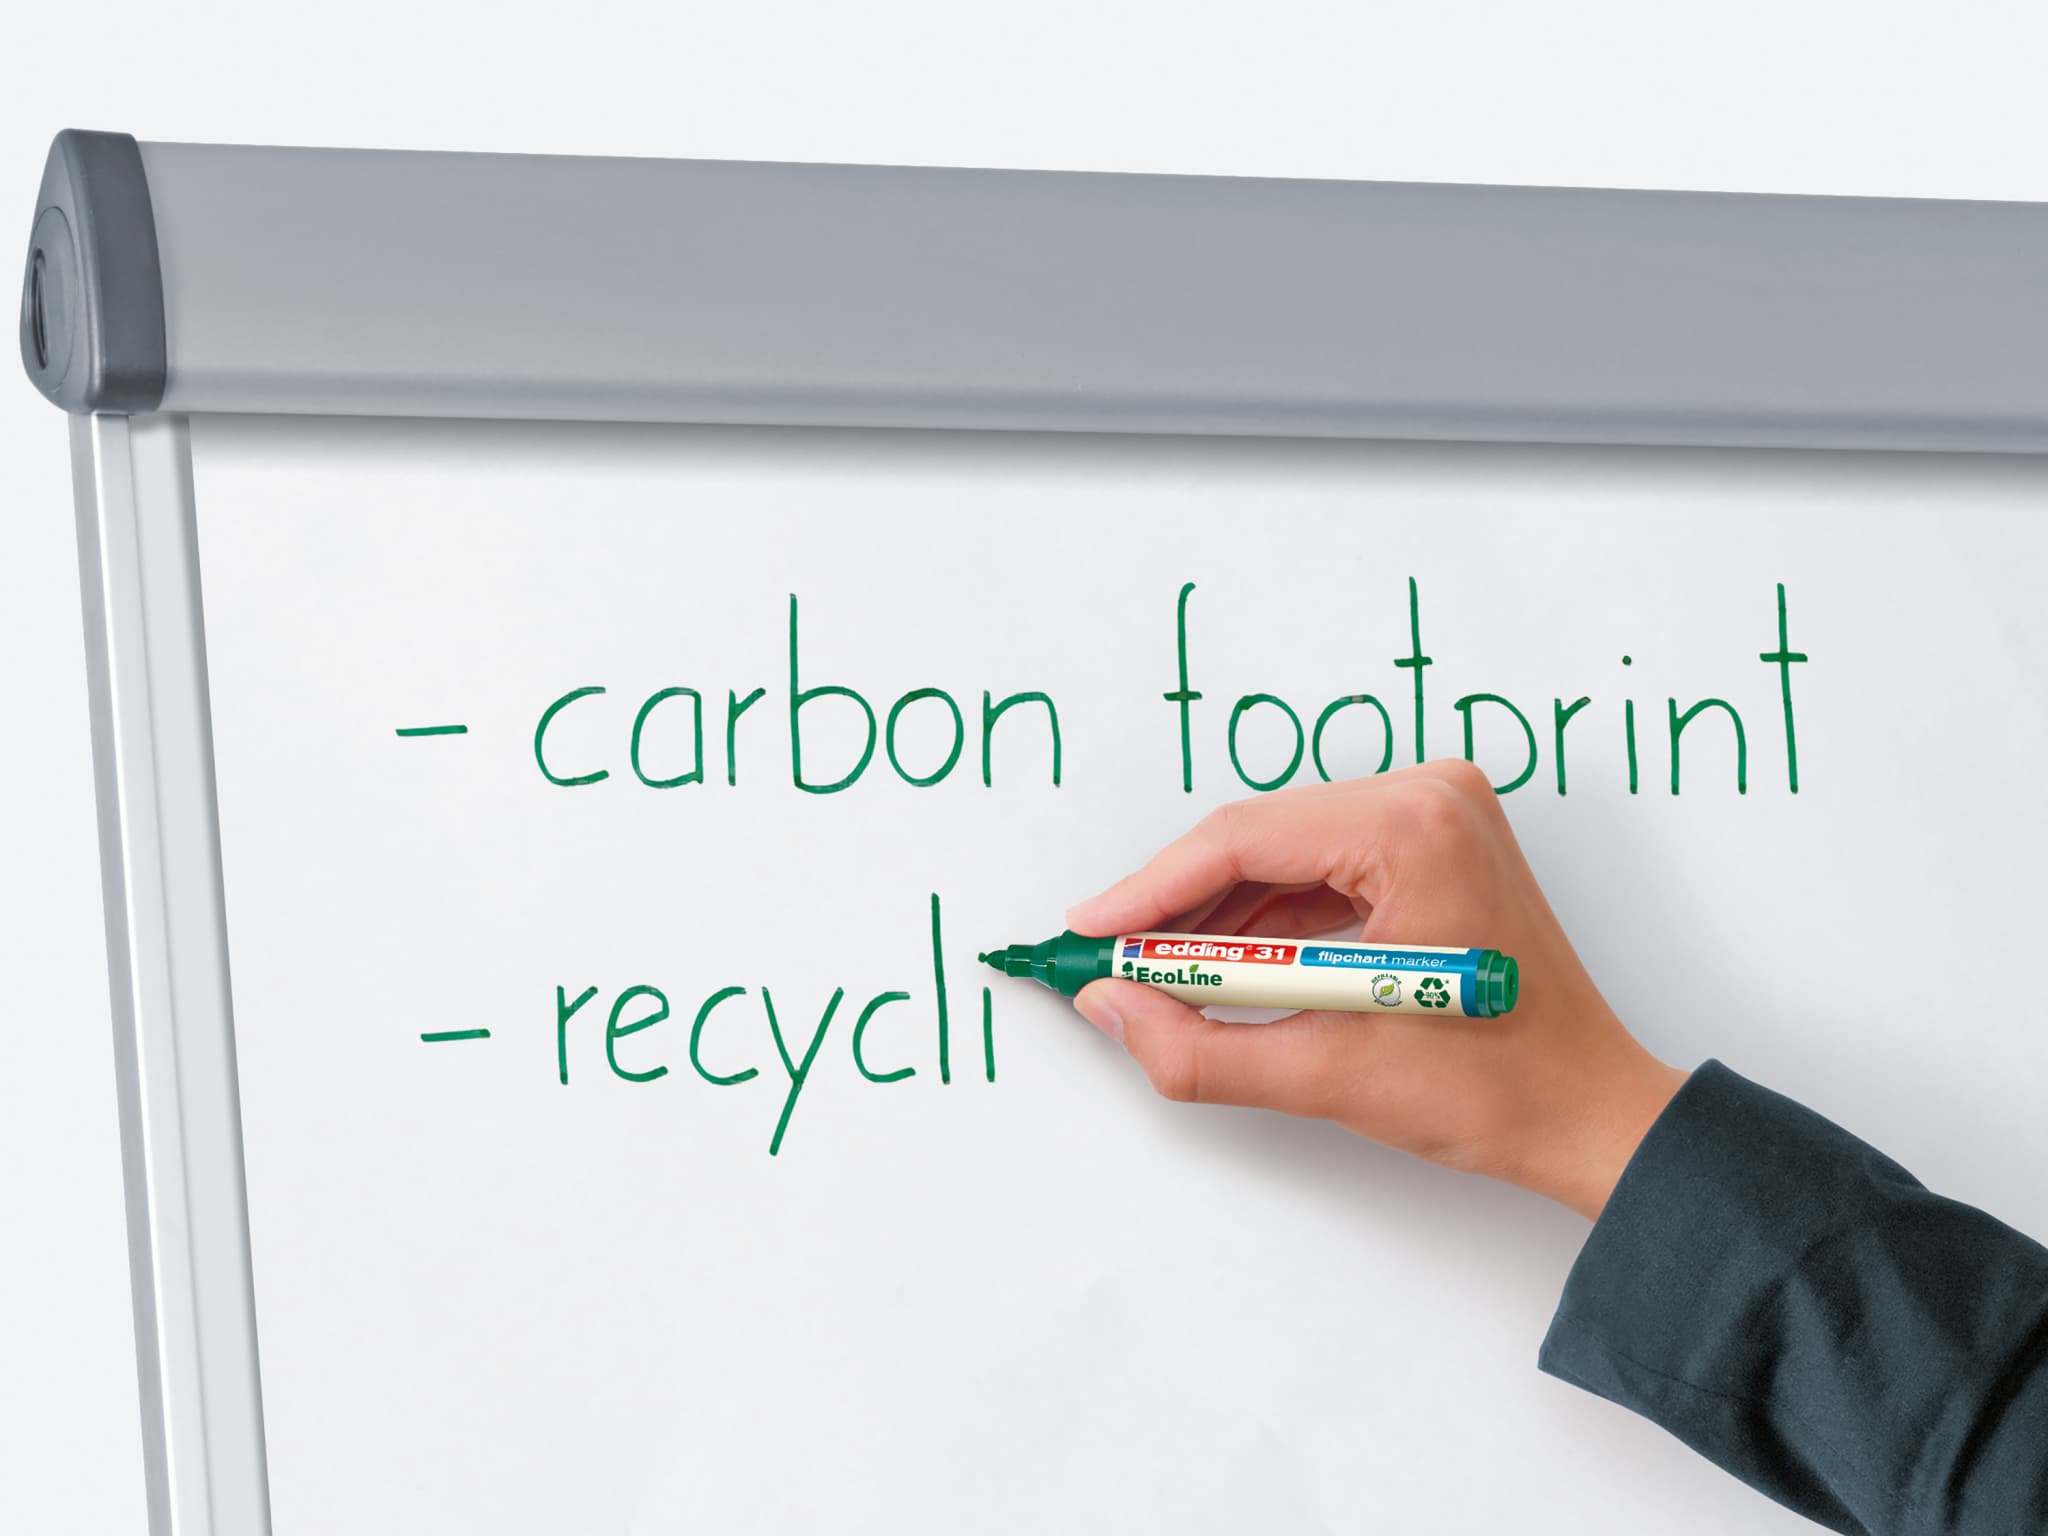 Eine Person schreibt mit einem edding 31 EcoLine Flipchartmarker eine Liste auf einem Whiteboard, die „CO2-Fußabdruck“ und „Recycling“ enthält, wobei der Schwerpunkt auf Nachhaltigkeit und Umweltbewusstsein liegt.